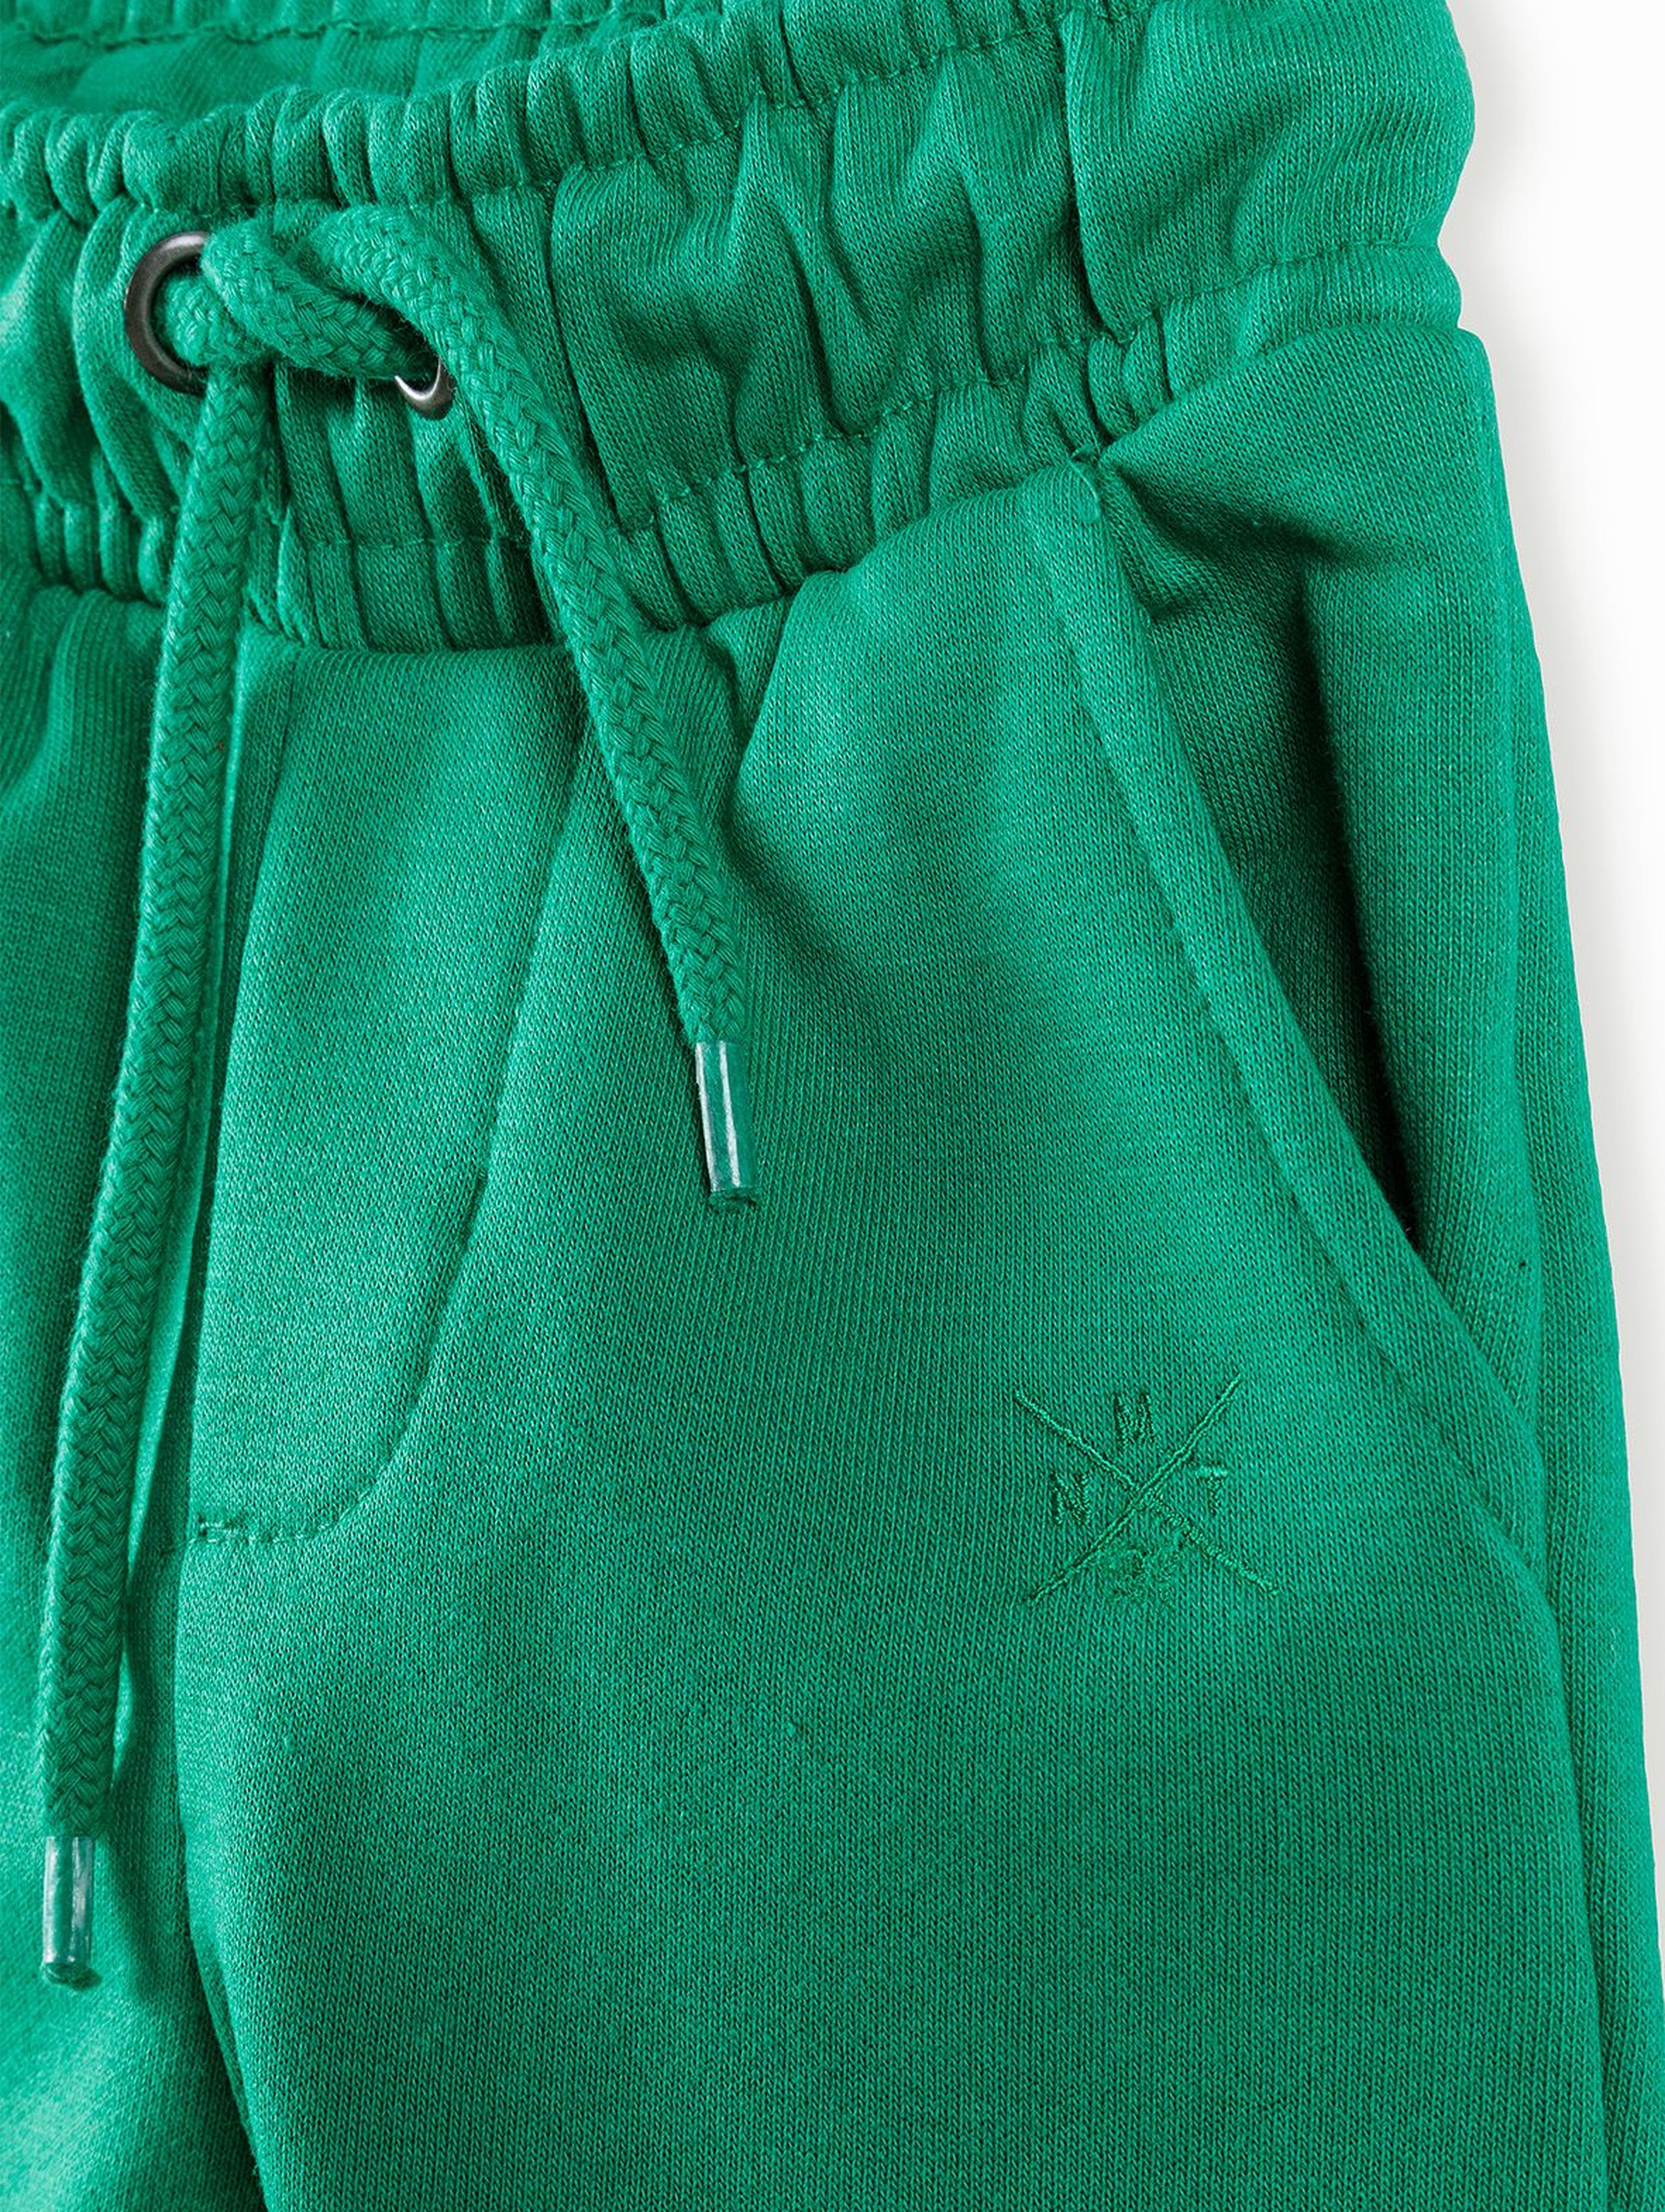 Spodnie dresowe niemowlęce- zielone